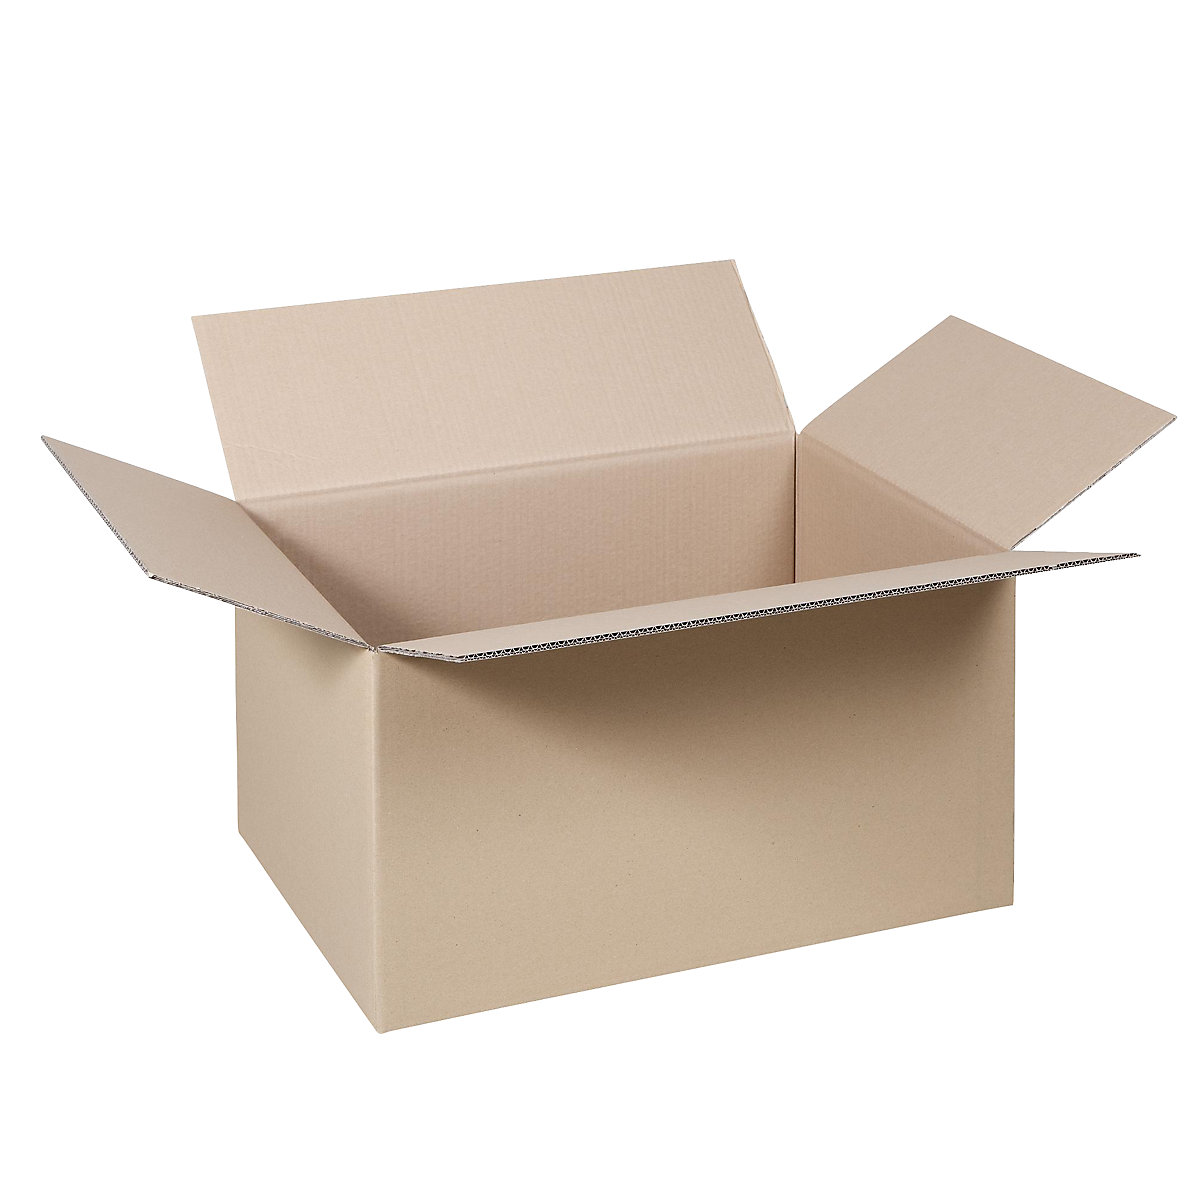 Cutie de carton pliantă, FEFCO 0201, cu 2 straturi de carton ondulat, dimensiuni interioare 605 x 455 x 180 mm, amb. 100 buc.-2